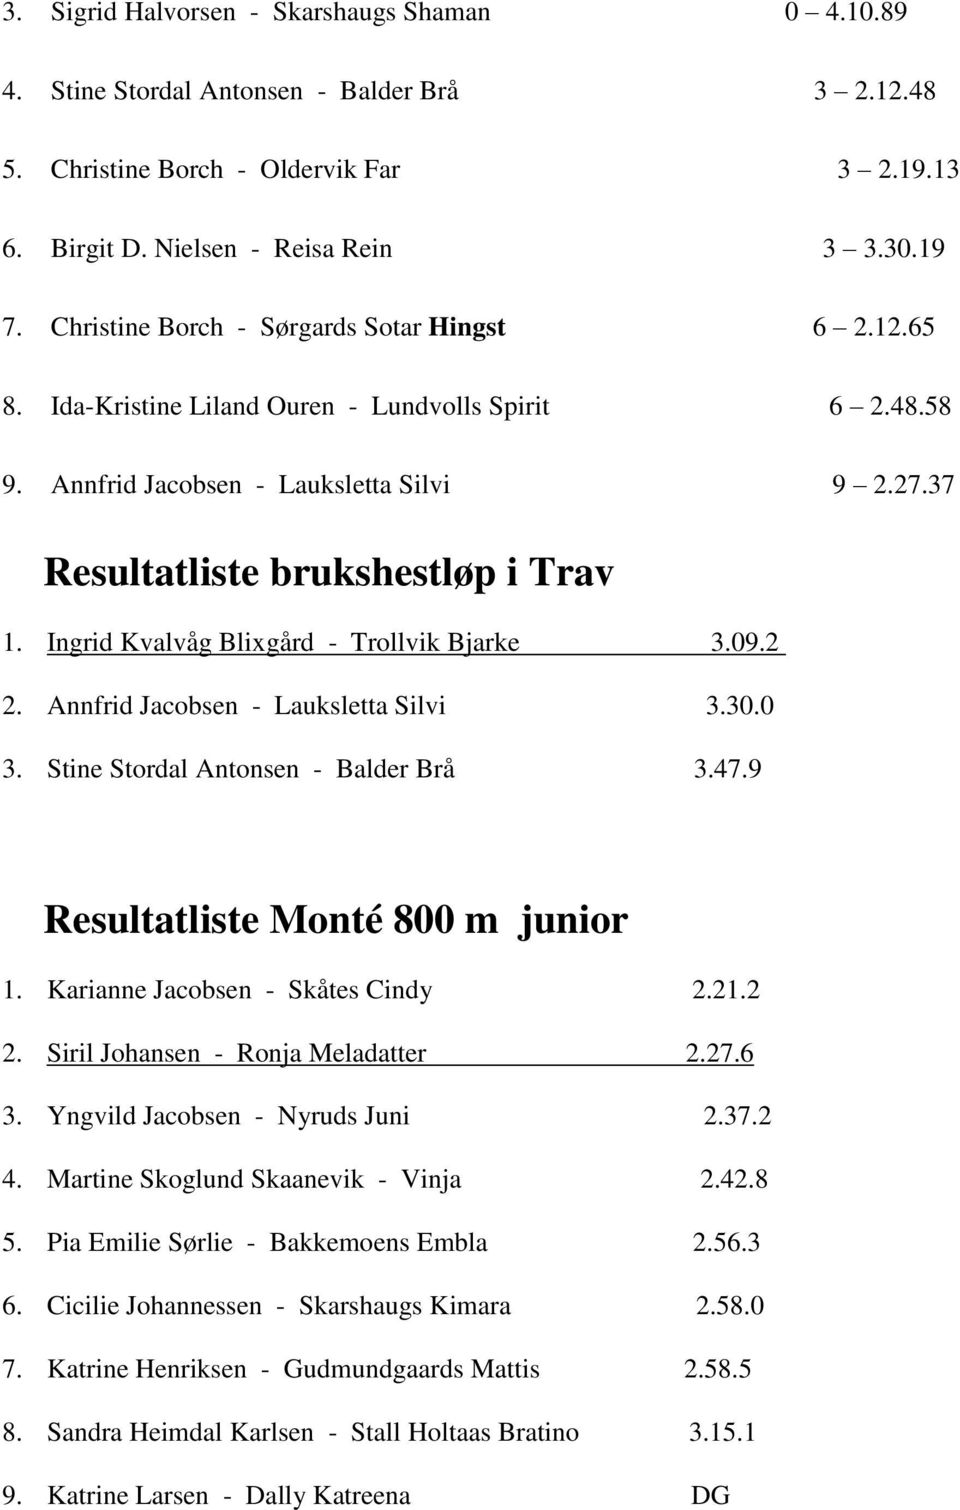 Ingrid Kvalvåg Blixgård - Trollvik Bjarke 3.09.2 2. Annfrid Jacobsen - Lauksletta Silvi 3.30.0 3. Stine Stordal Antonsen - Balder Brå 3.47.9 Resultatliste Monté 800 m junior 1.